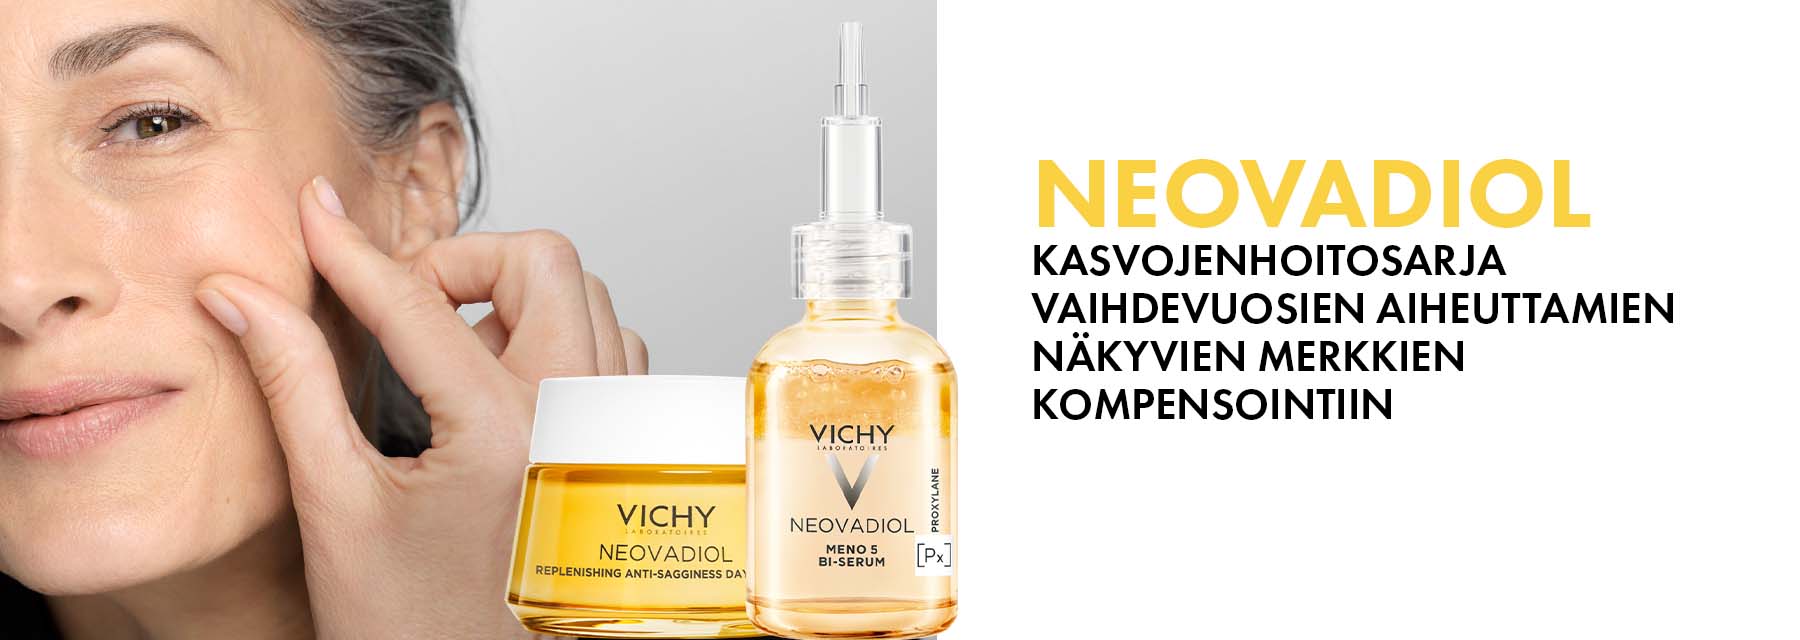 Vichy Neovadiol -ihonhoitotuotteet | Yliopiston Apteekki